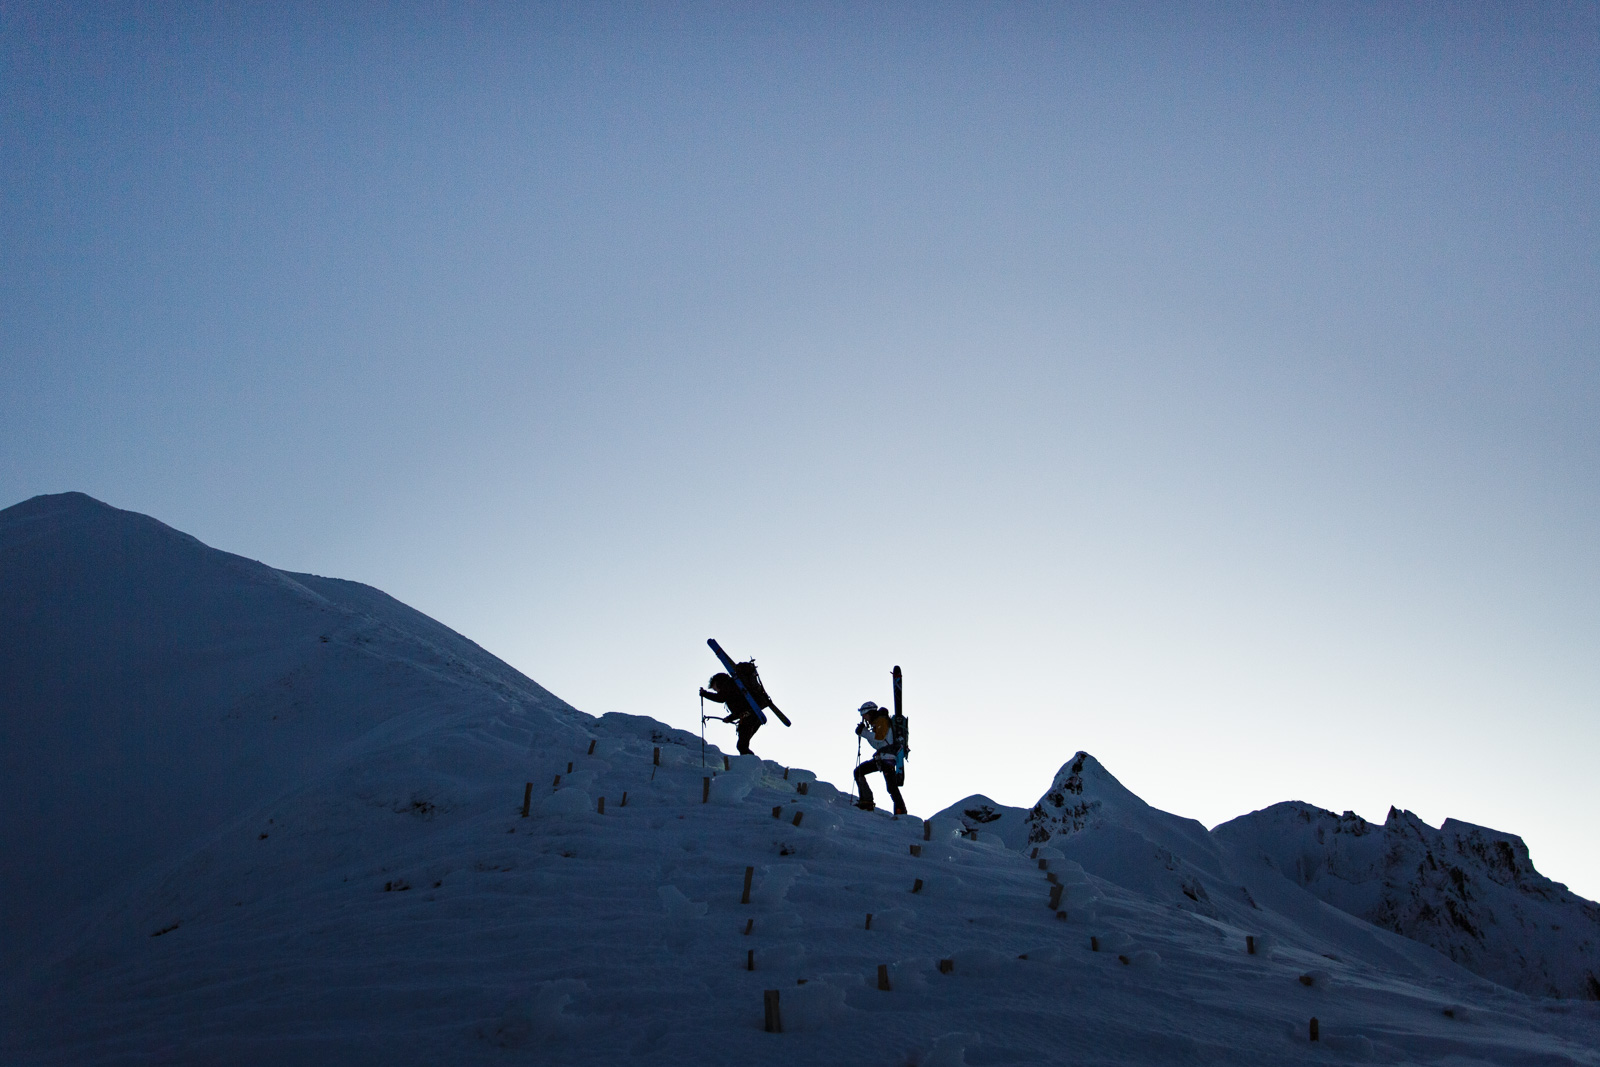 Une initiation à l'alpinisme sur le Puy de Sancy, ski sur le dos pour profiter de la descente